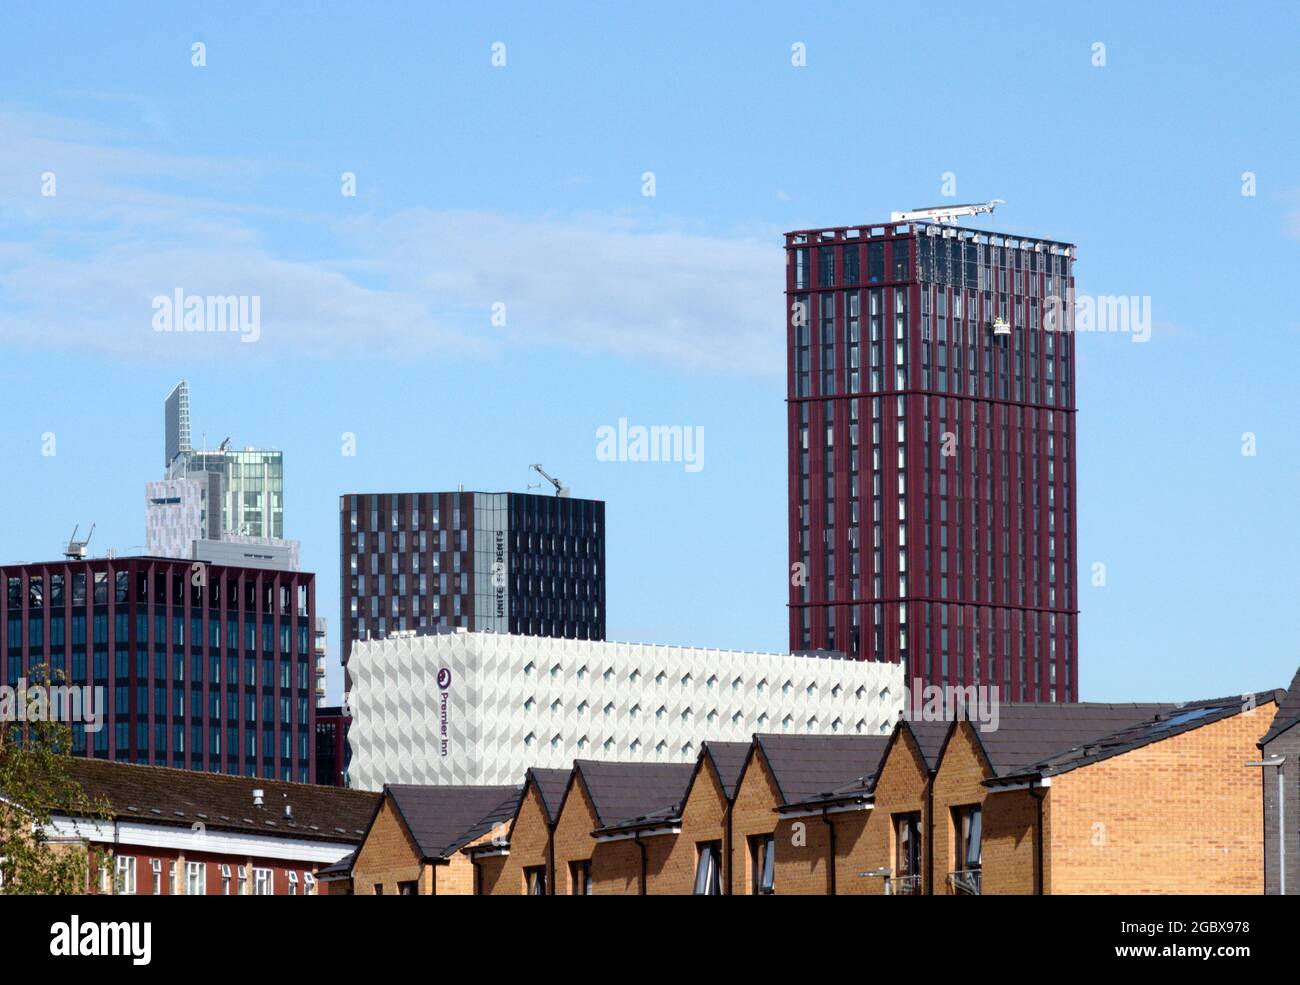 Nuovi grattacieli o edifici alti, con nuove case in primo piano, nel centro di Manchester, Inghilterra, Regno Unito Foto Stock